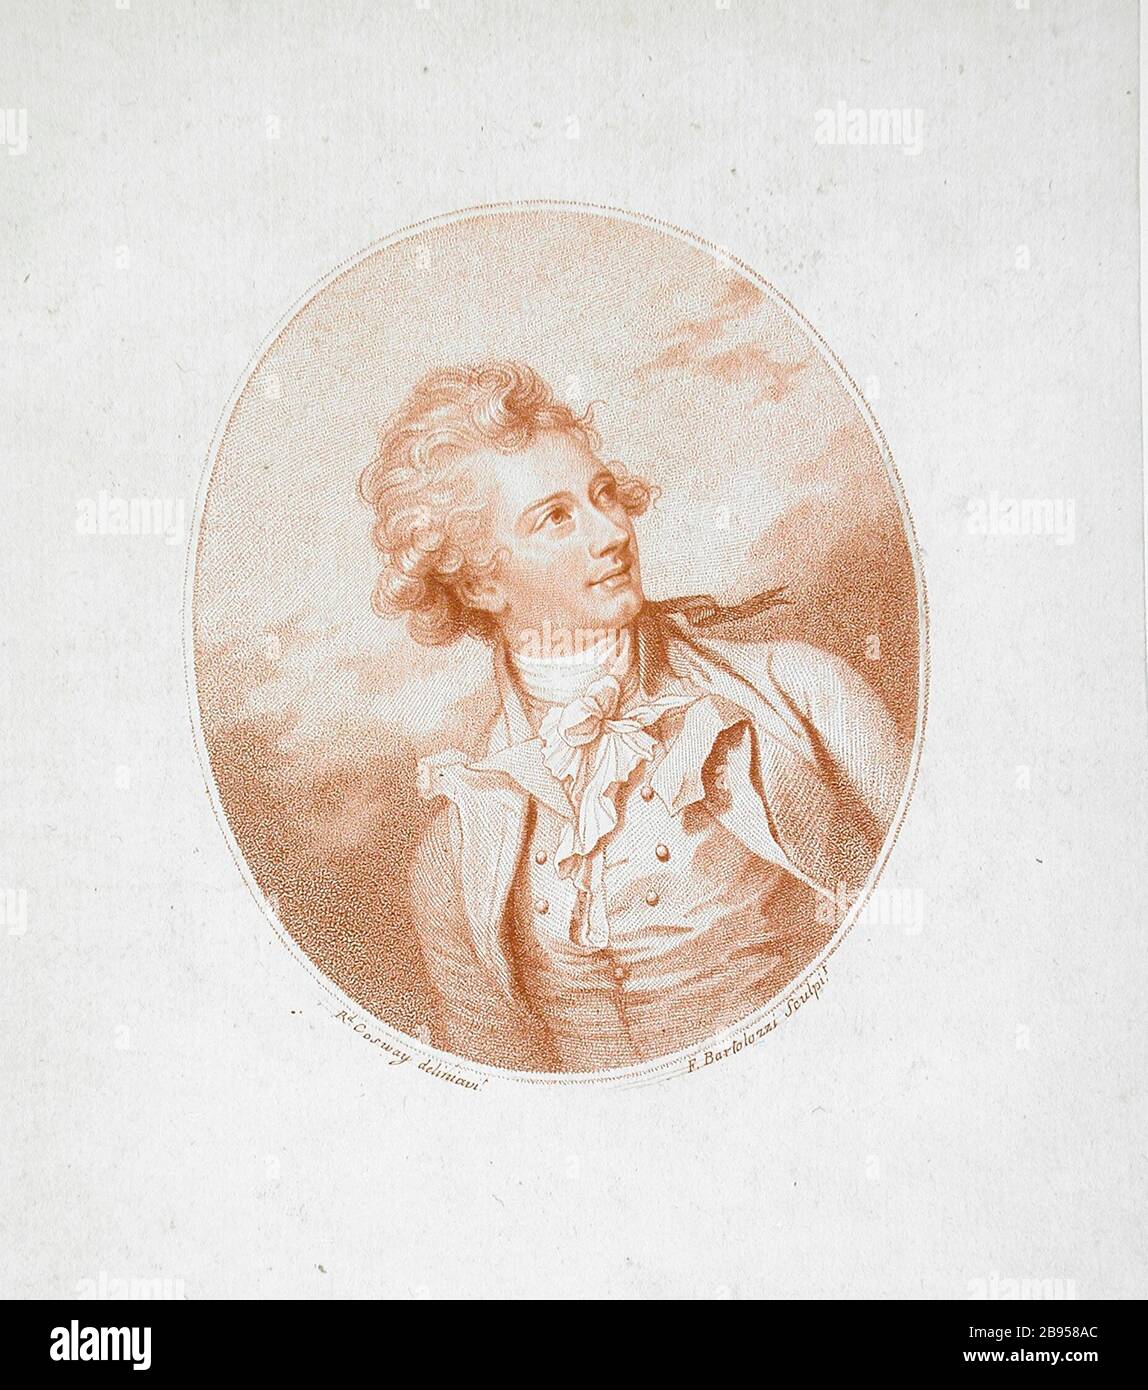 "Vicente Lunardi, Escudero; en inglés: Italia, 1784 imprime; grabados aguafuerte y grabado stipple en tono optimista de la hoja: 7 5/8" x 6 1/4". (19.37 x 15,88 cm); imagen: 4 5/8 x 4 in. (11,75 x 10,16 cm) oval del museo de arte de regalo Consejo (M.74.27.1) grabados y dibujos; QS 1784Fecha:P571,+1784-00-00T00:00:00Z/9; ' Foto de stock